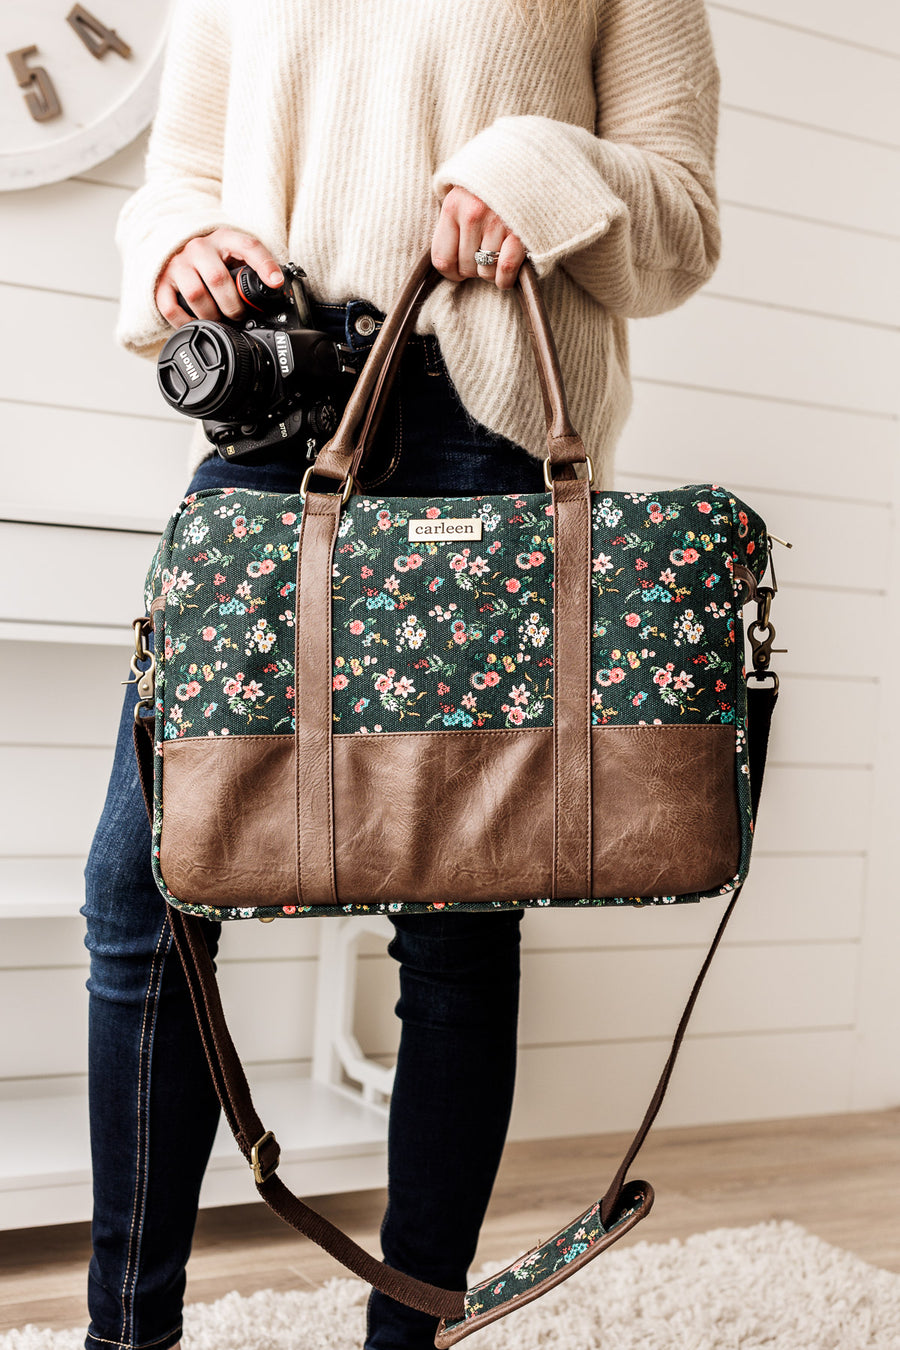 Down To Business Camera Bag & Stationery Bundle - Vintage Floral